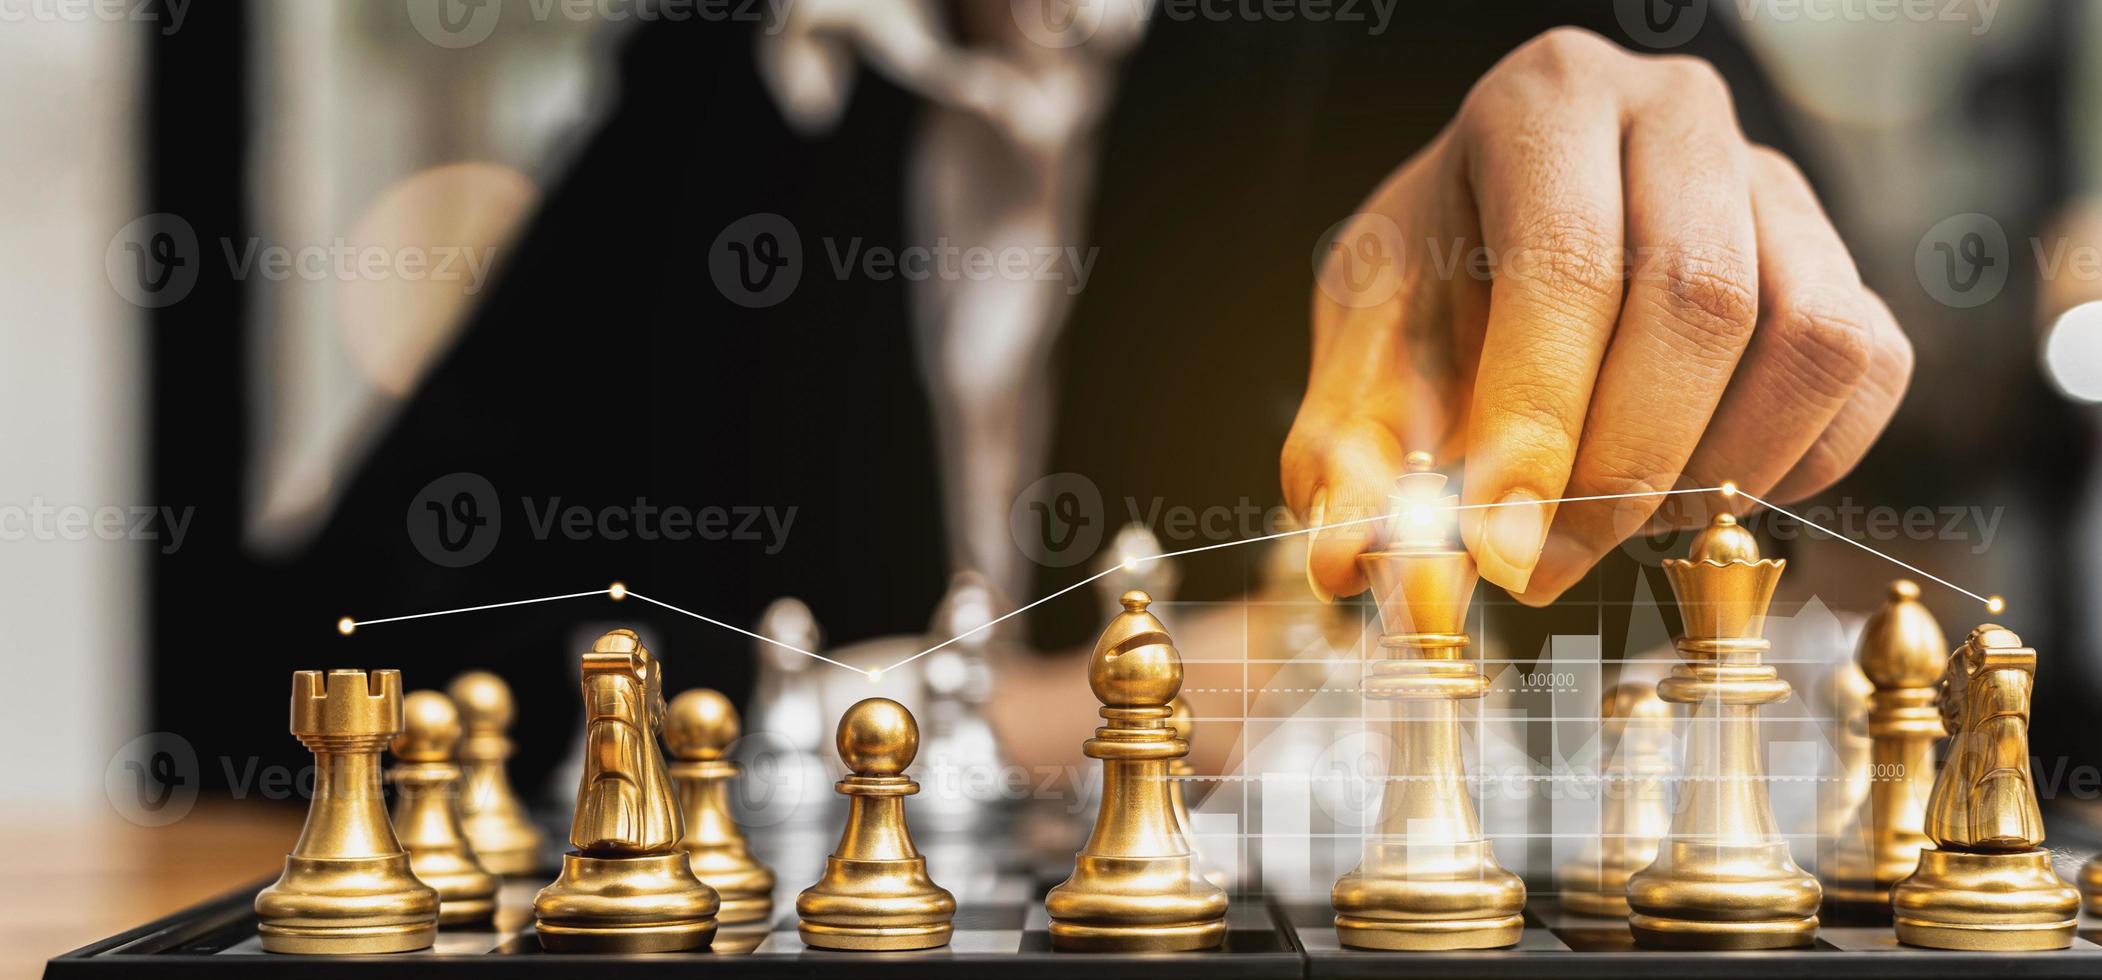 pessoa segurando peças de xadrez douradas para executar um jogo